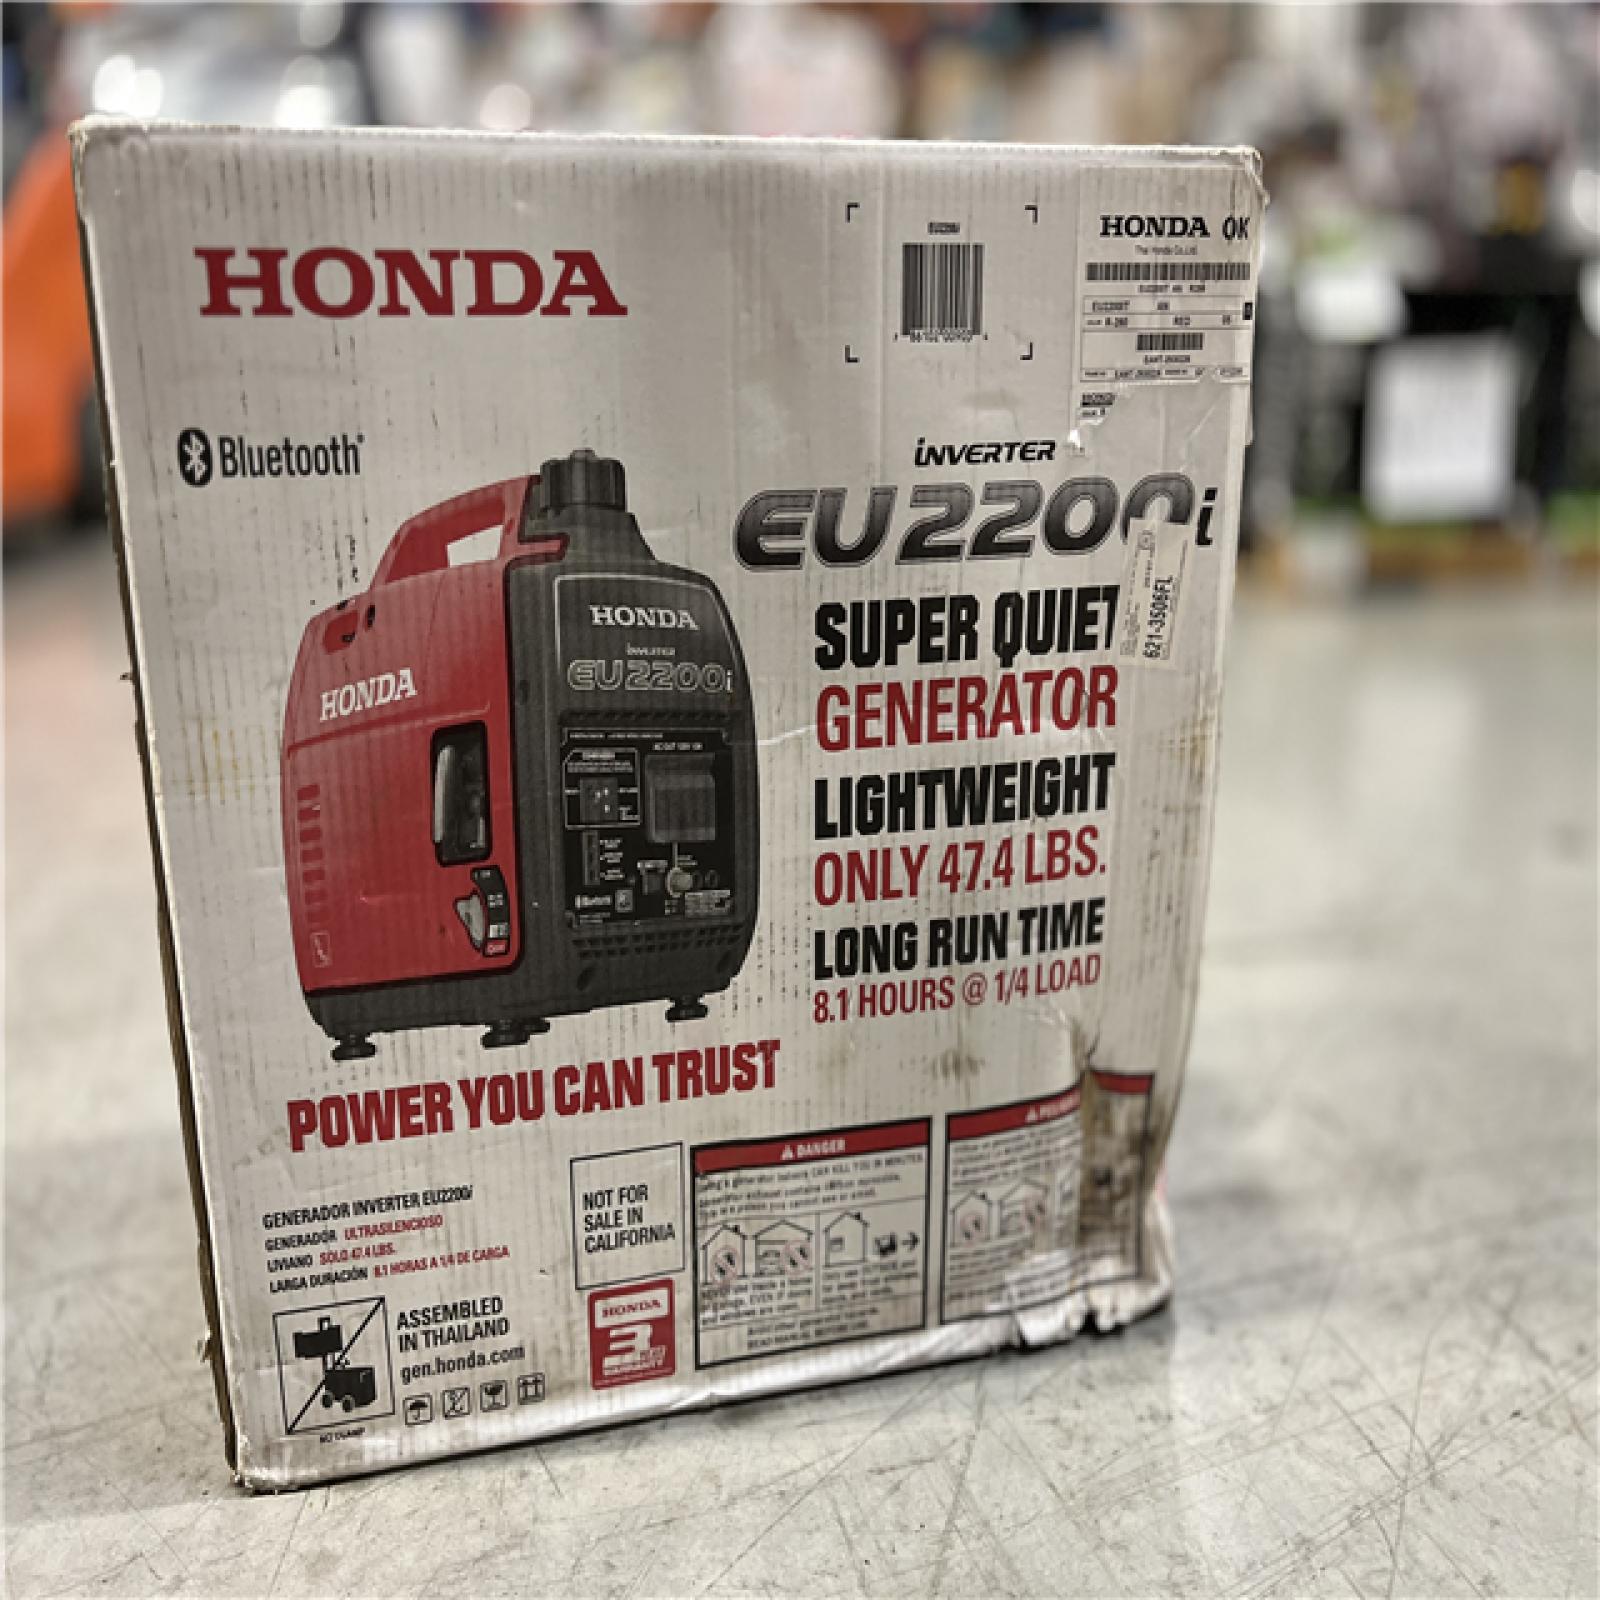 NEW! - HONDA 2200 watt 120V inverter generator with CO-MINDER